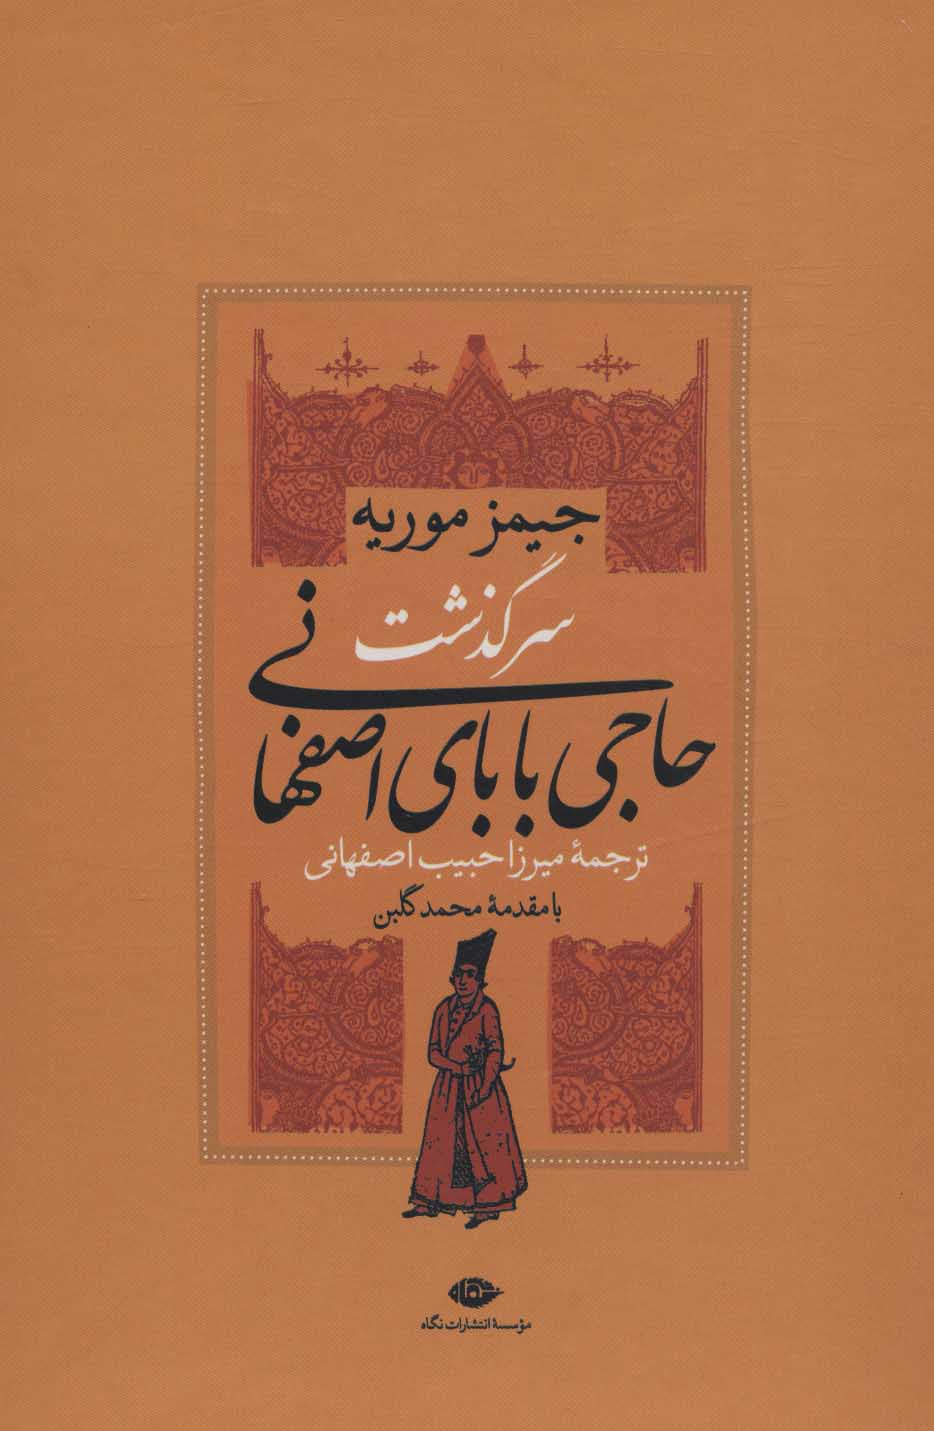 سرگذشت حاجی بابای اصفهانی (2جلدی باقاب)